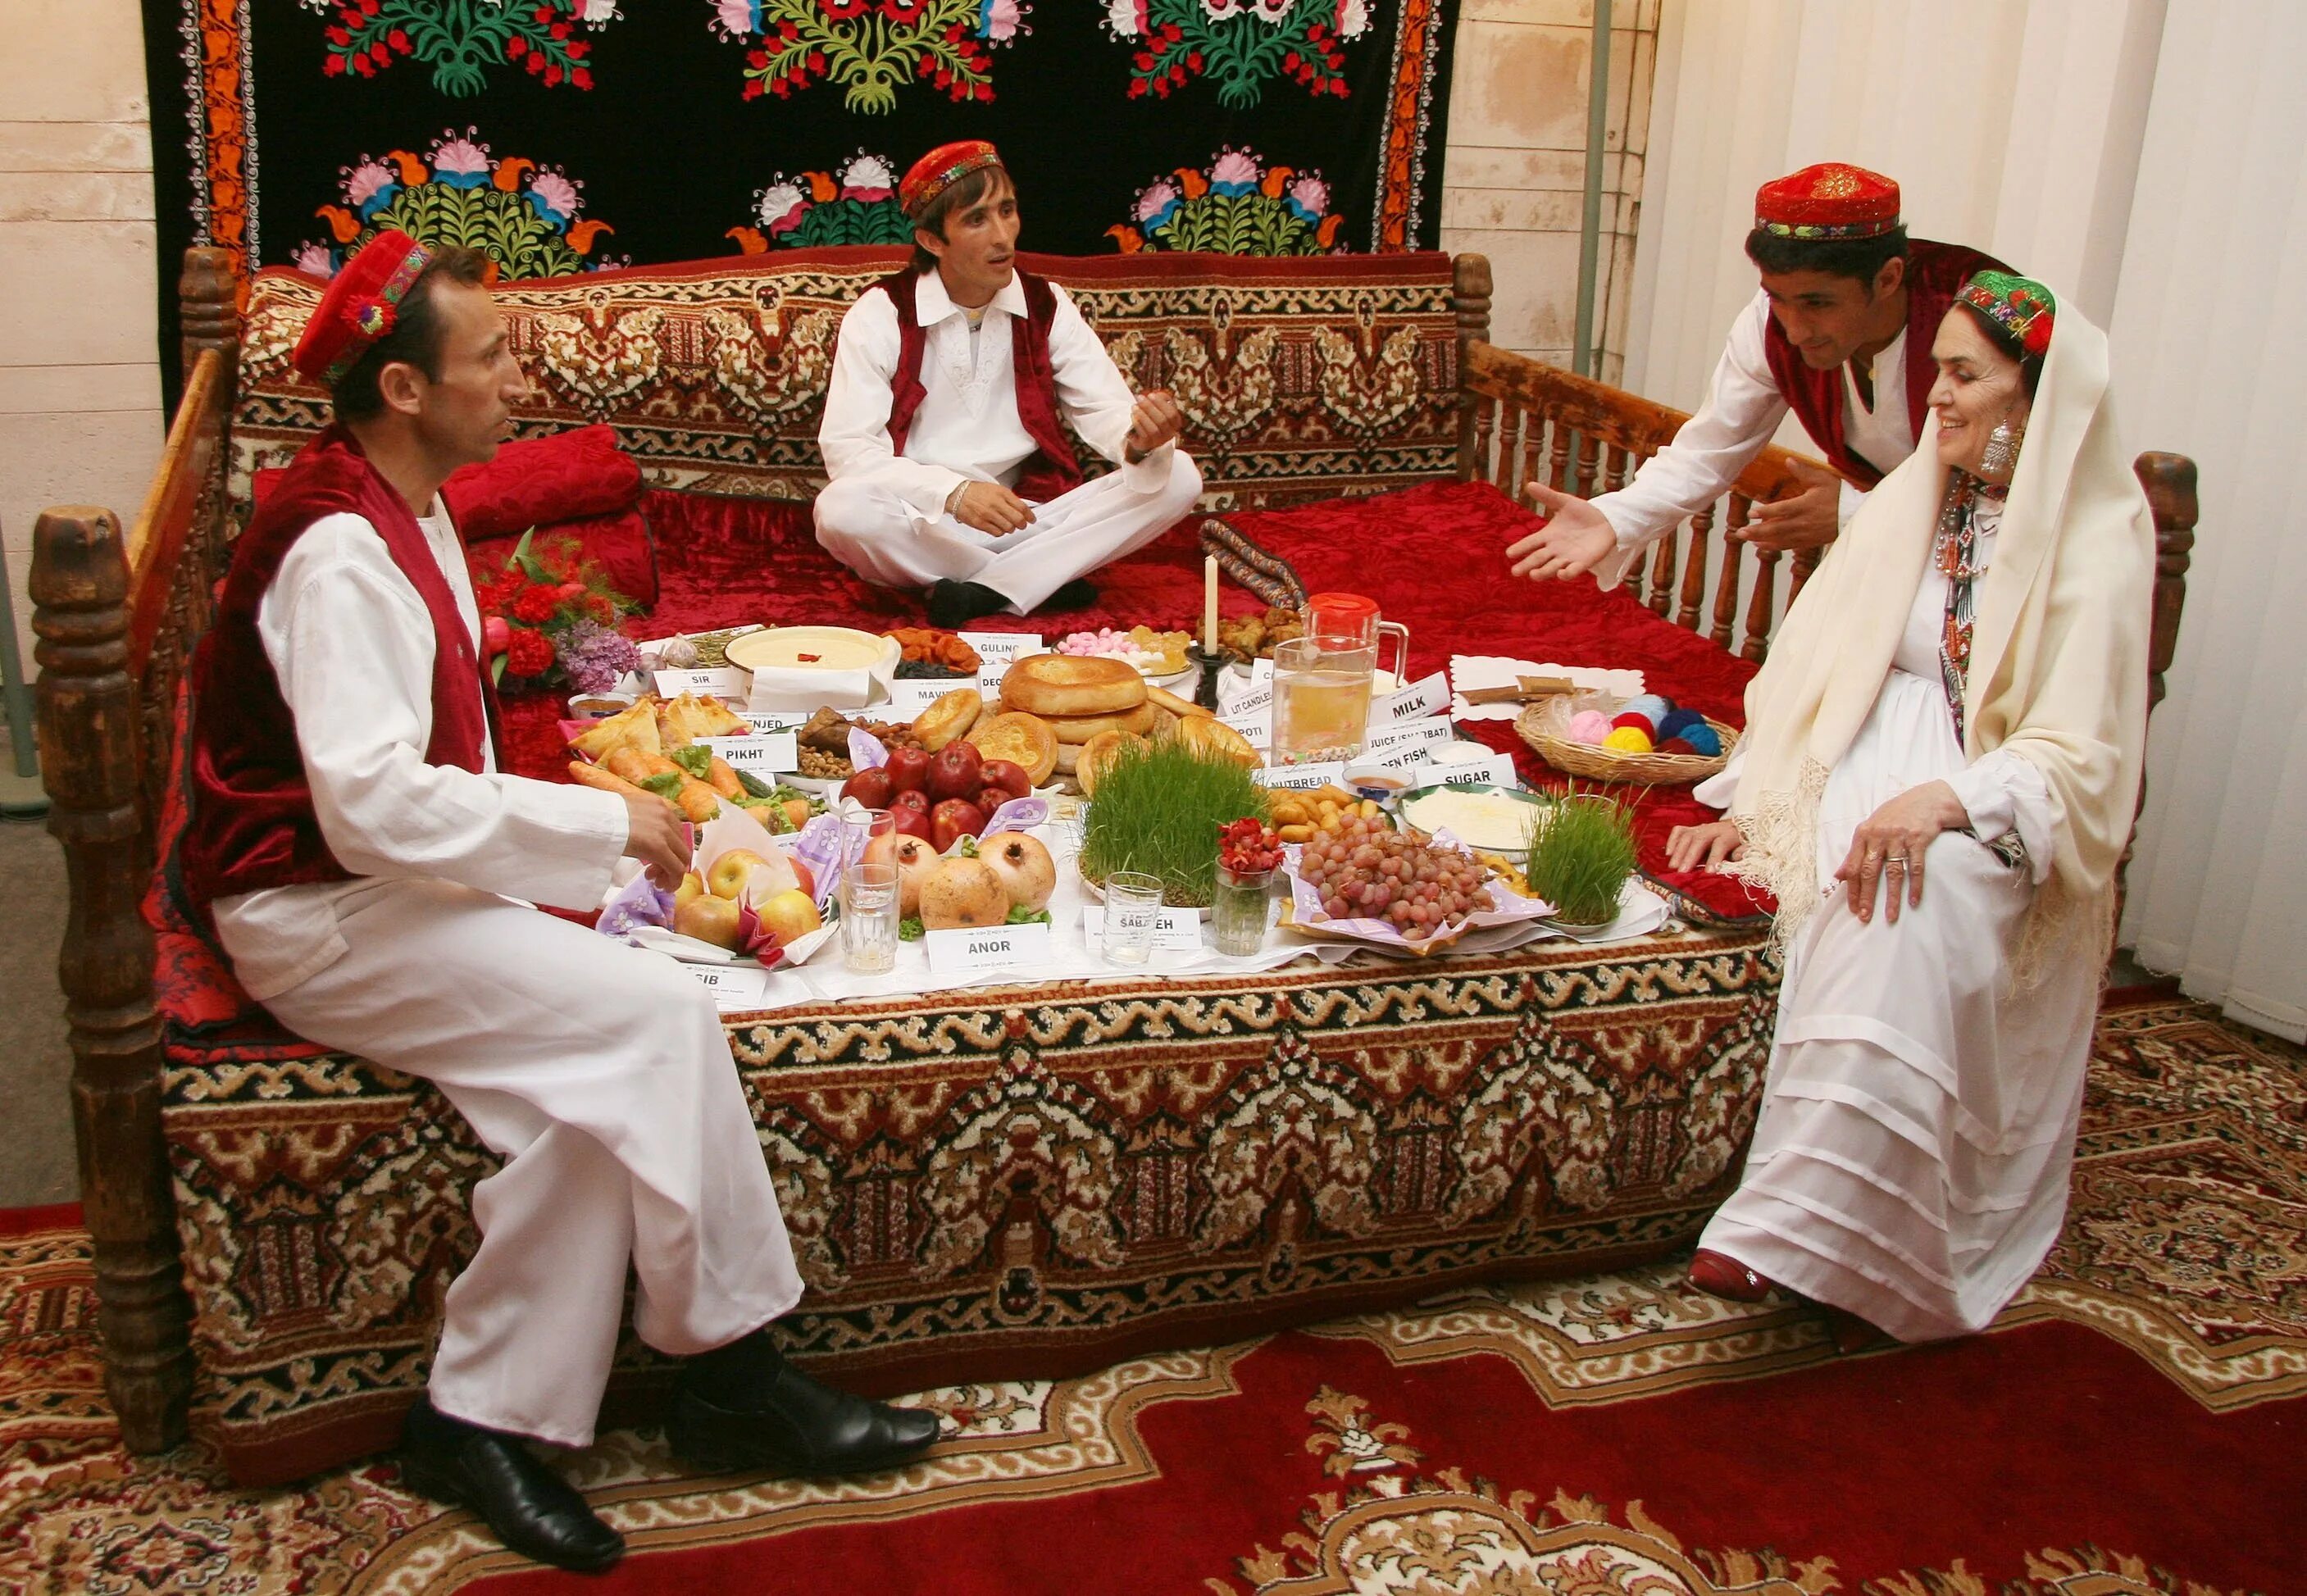 Отношения по таджикски. Традиции Навруза в Узбекистане. Навруз в Узбекистане и в Таджикистане. Хафт син Навруз. Традиции Памира Навруз.